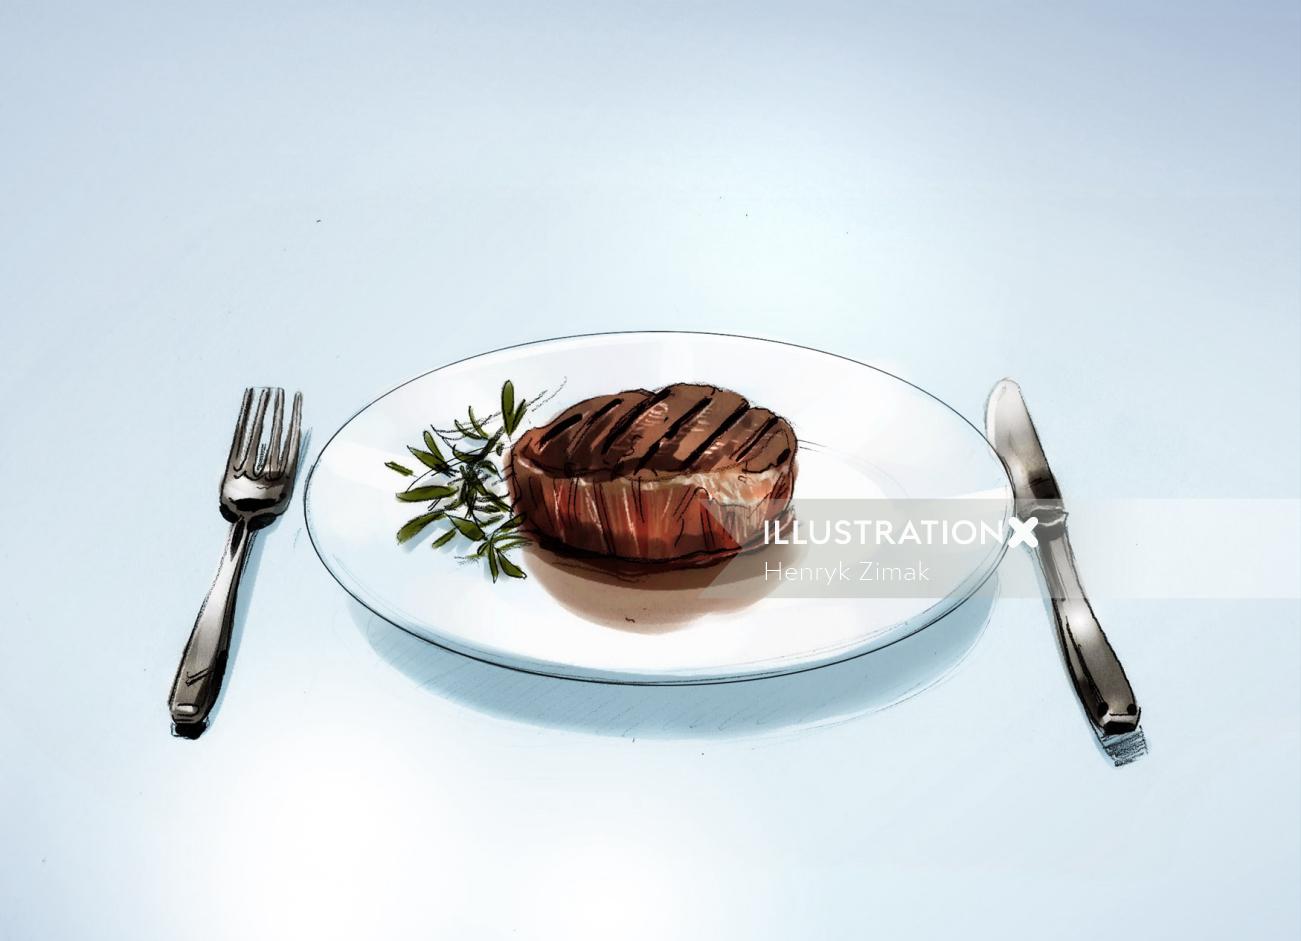 Food illustration by Henry Zimak